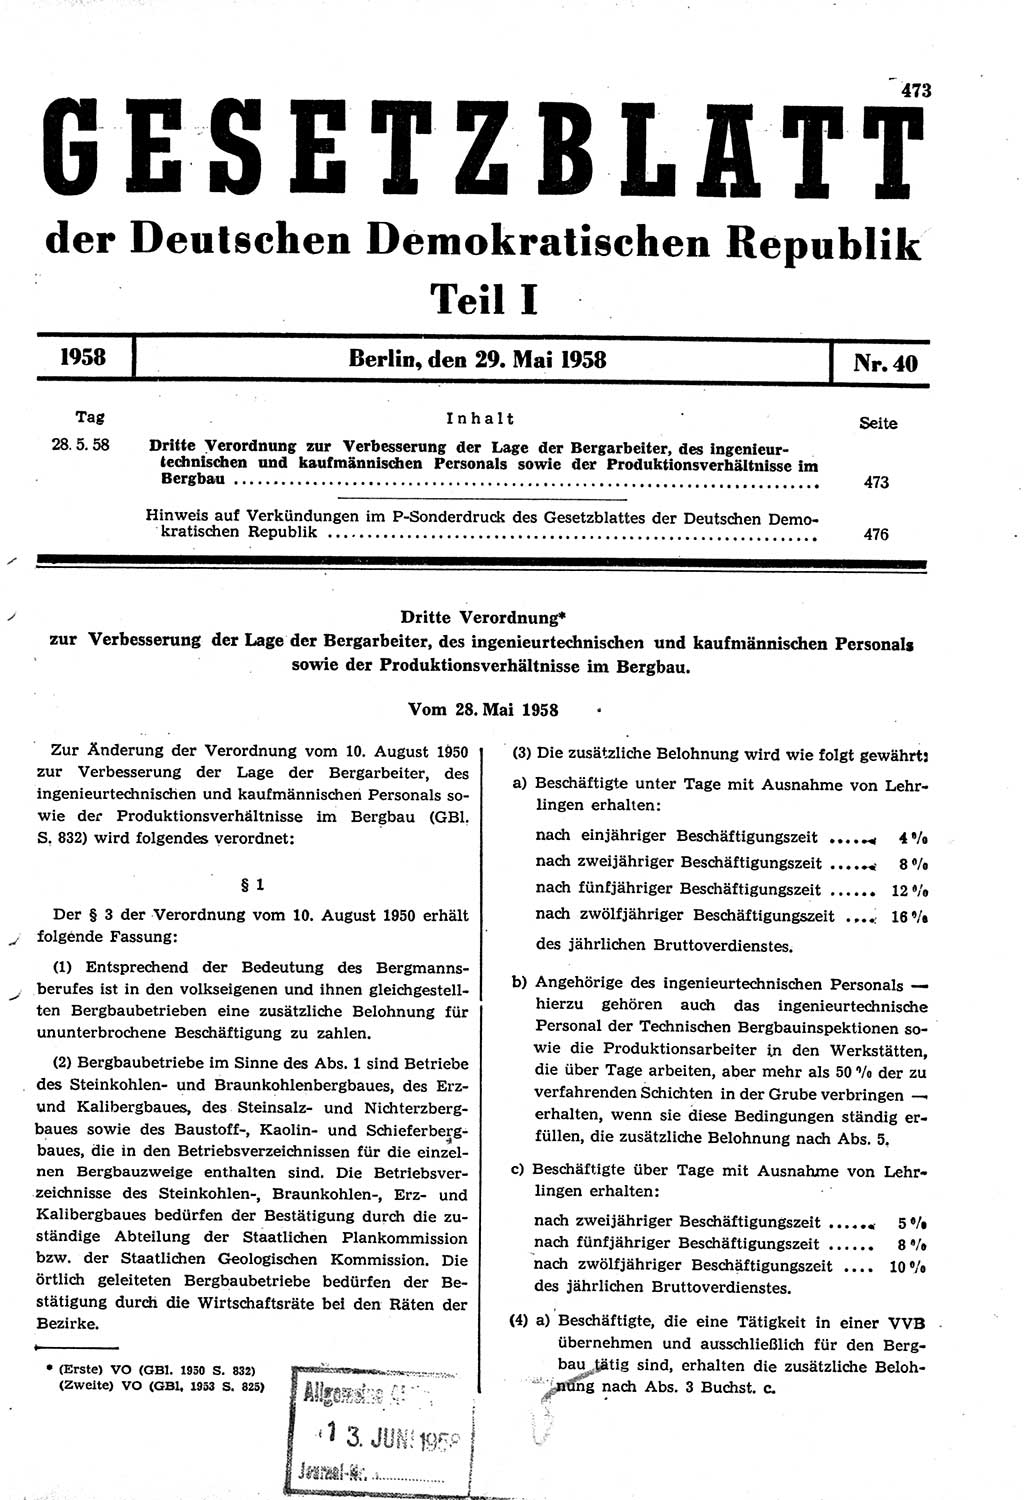 Gesetzblatt (GBl.) der Deutschen Demokratischen Republik (DDR) Teil Ⅰ 1958, Seite 473 (GBl. DDR Ⅰ 1958, S. 473)